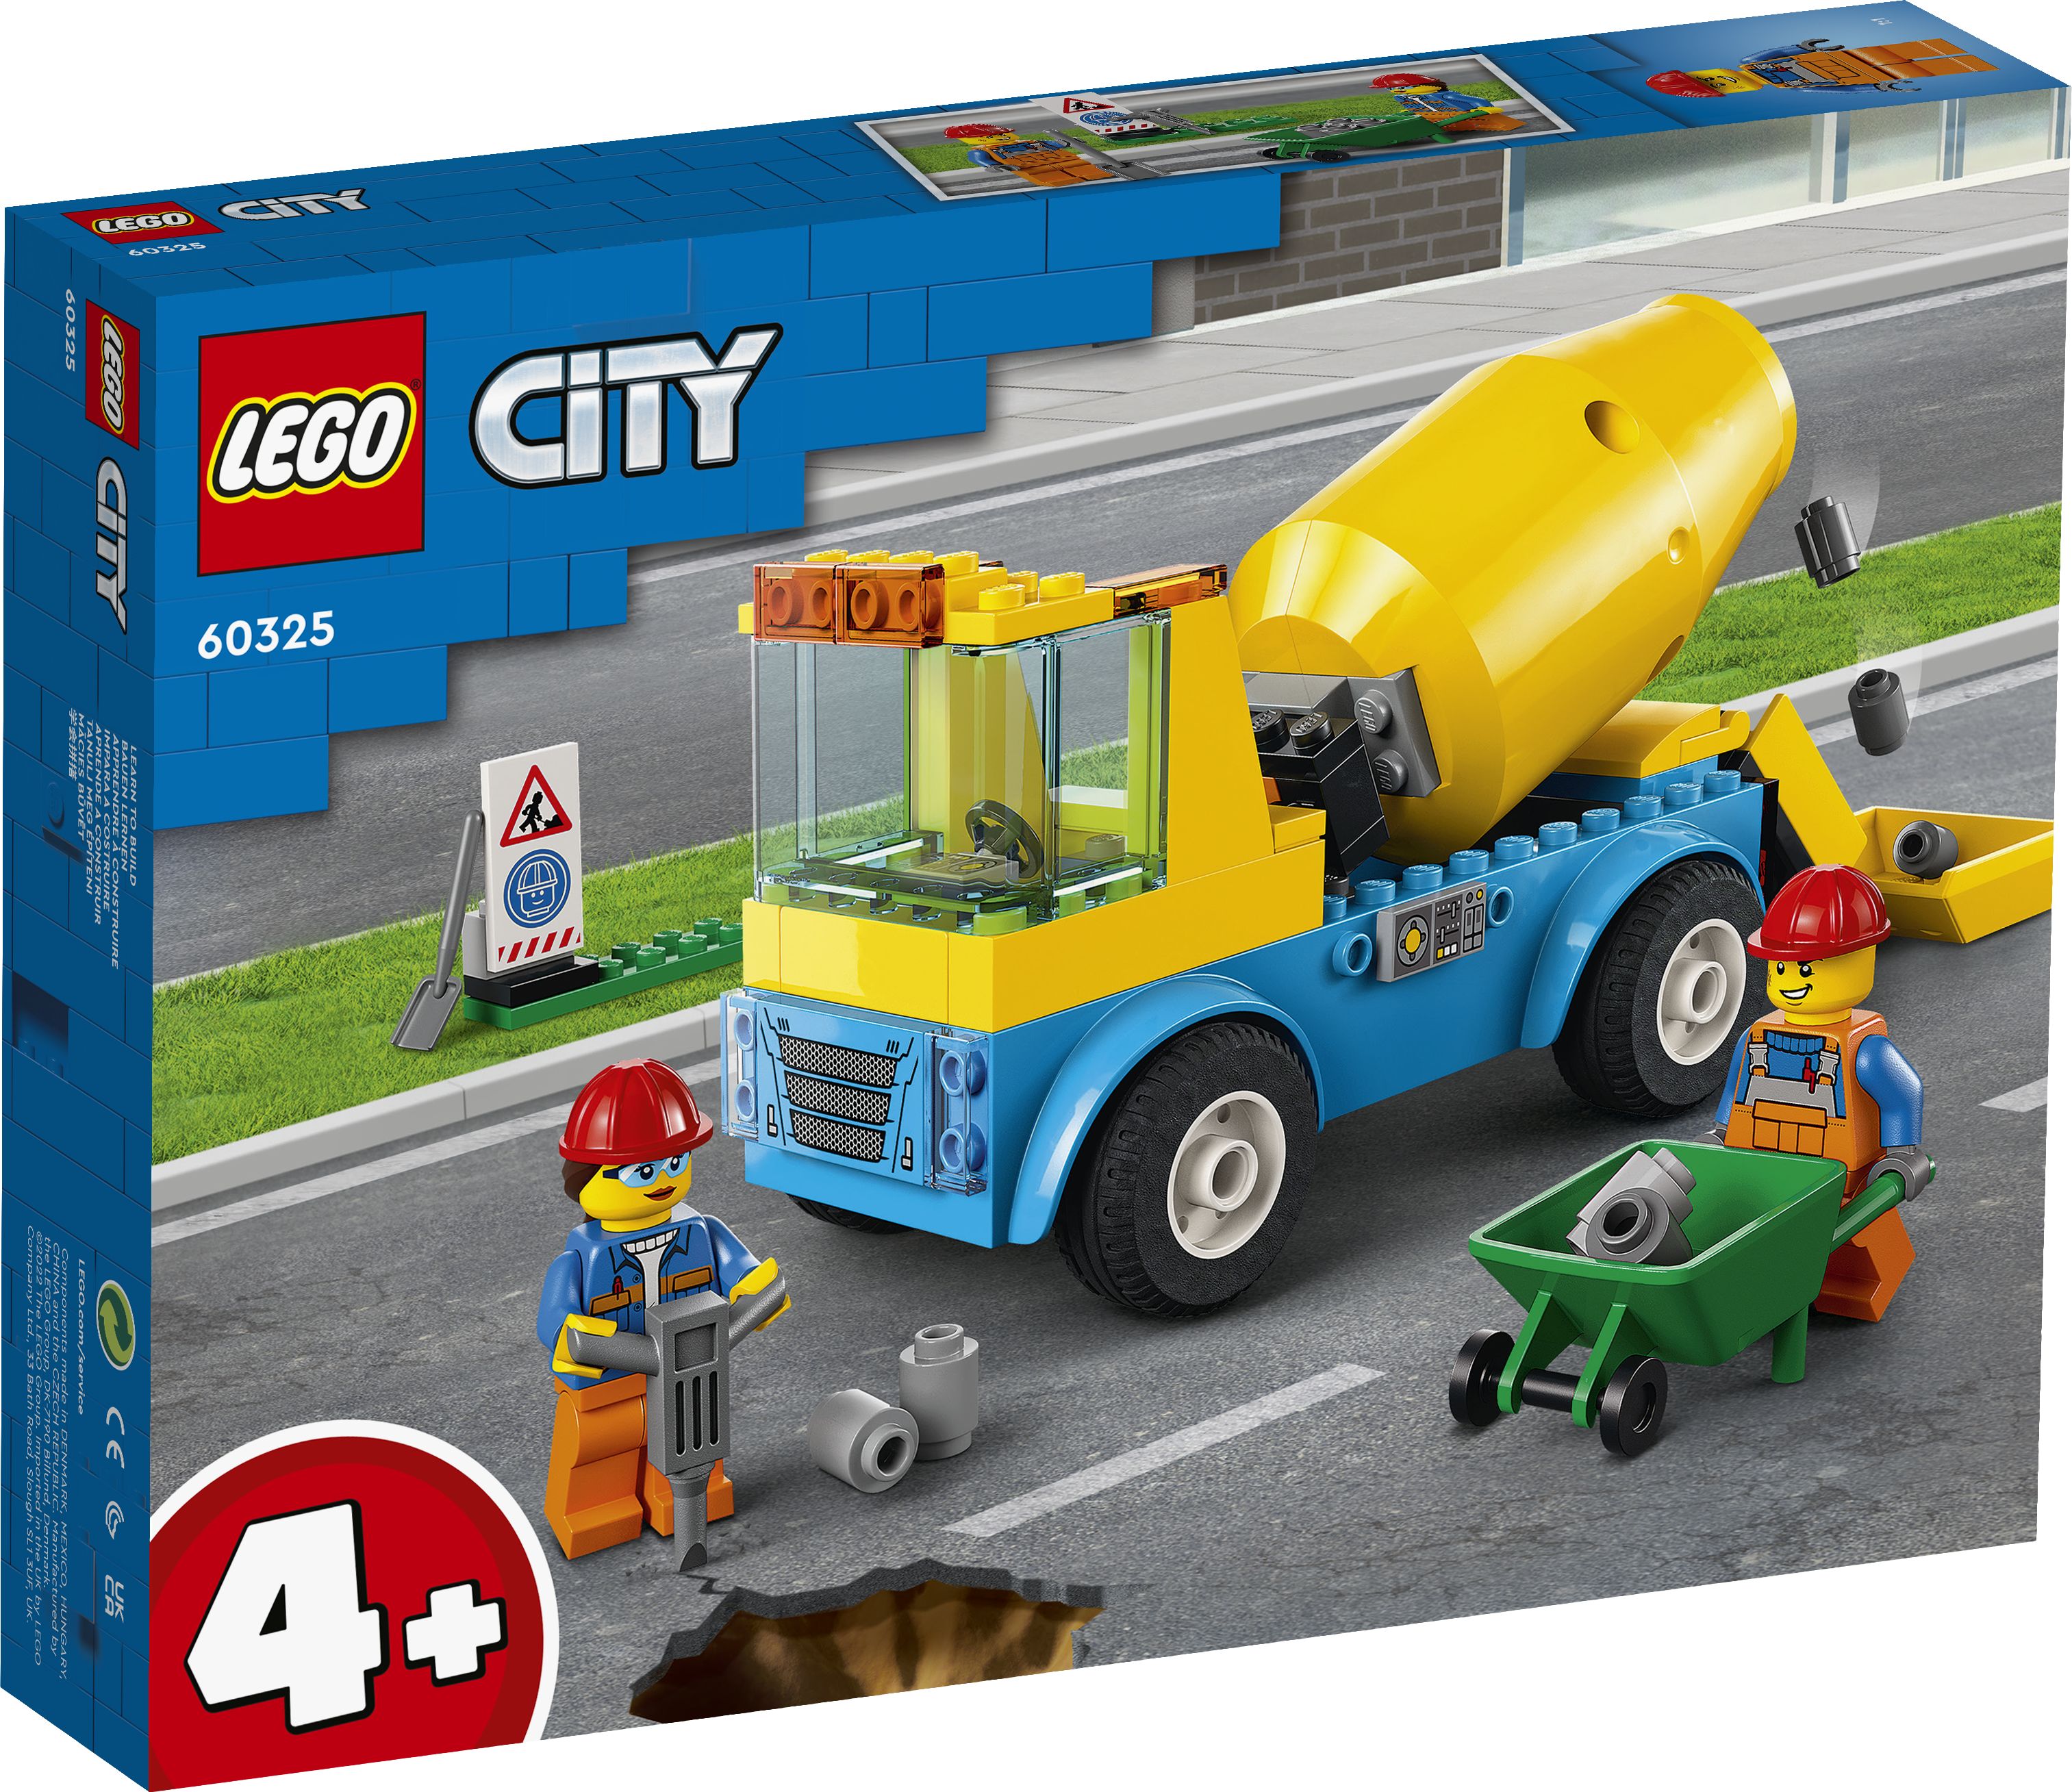 LEGO City 60325 Betonmischer LEGO_60325_Box1_v29.jpg